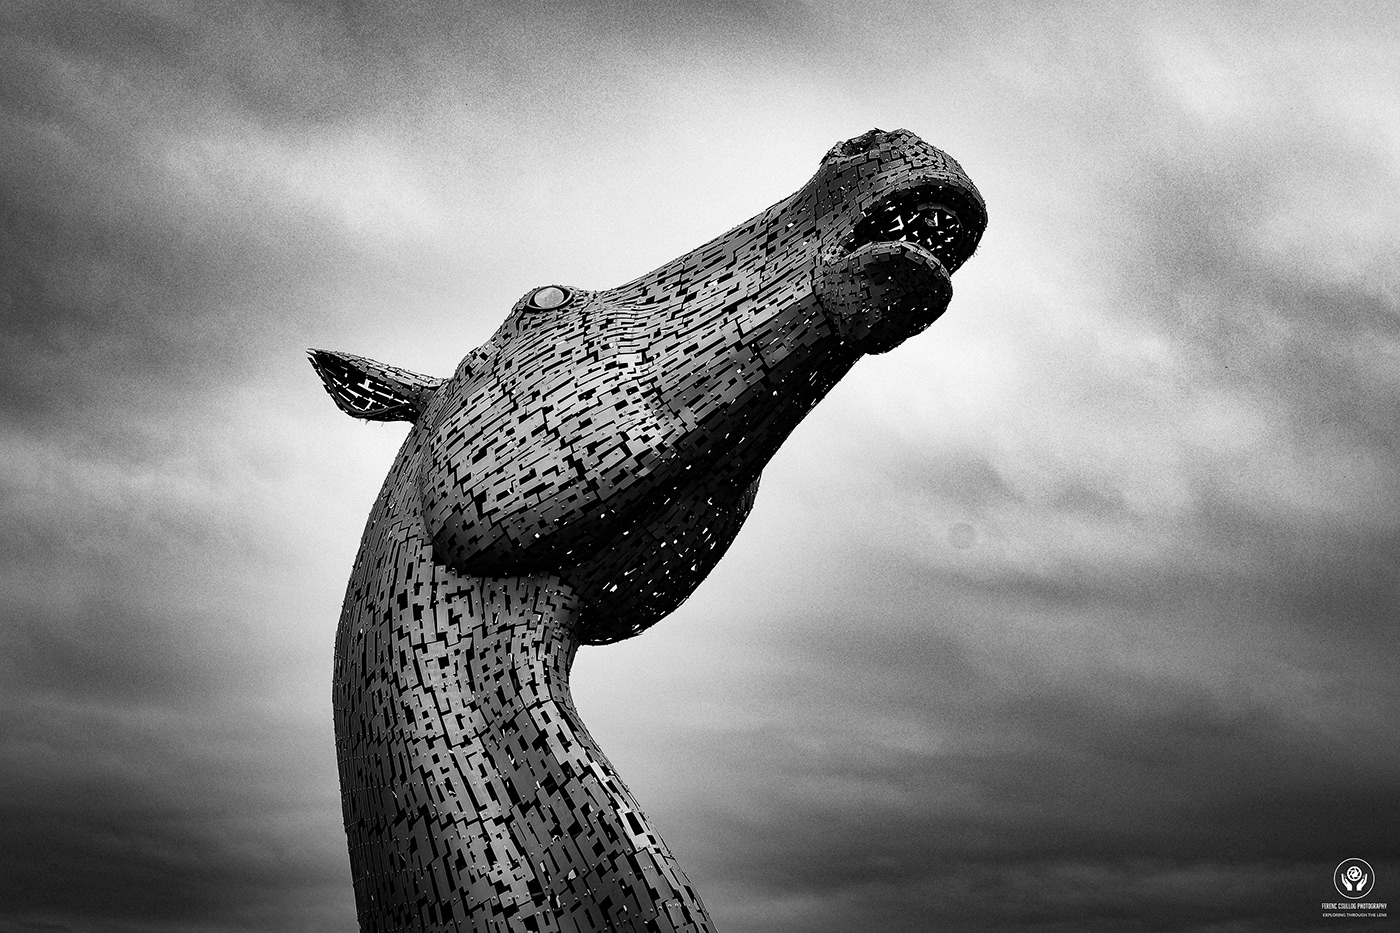 scotland Landscape Travel architecture monument UK sculpture metal falkirk kelpies